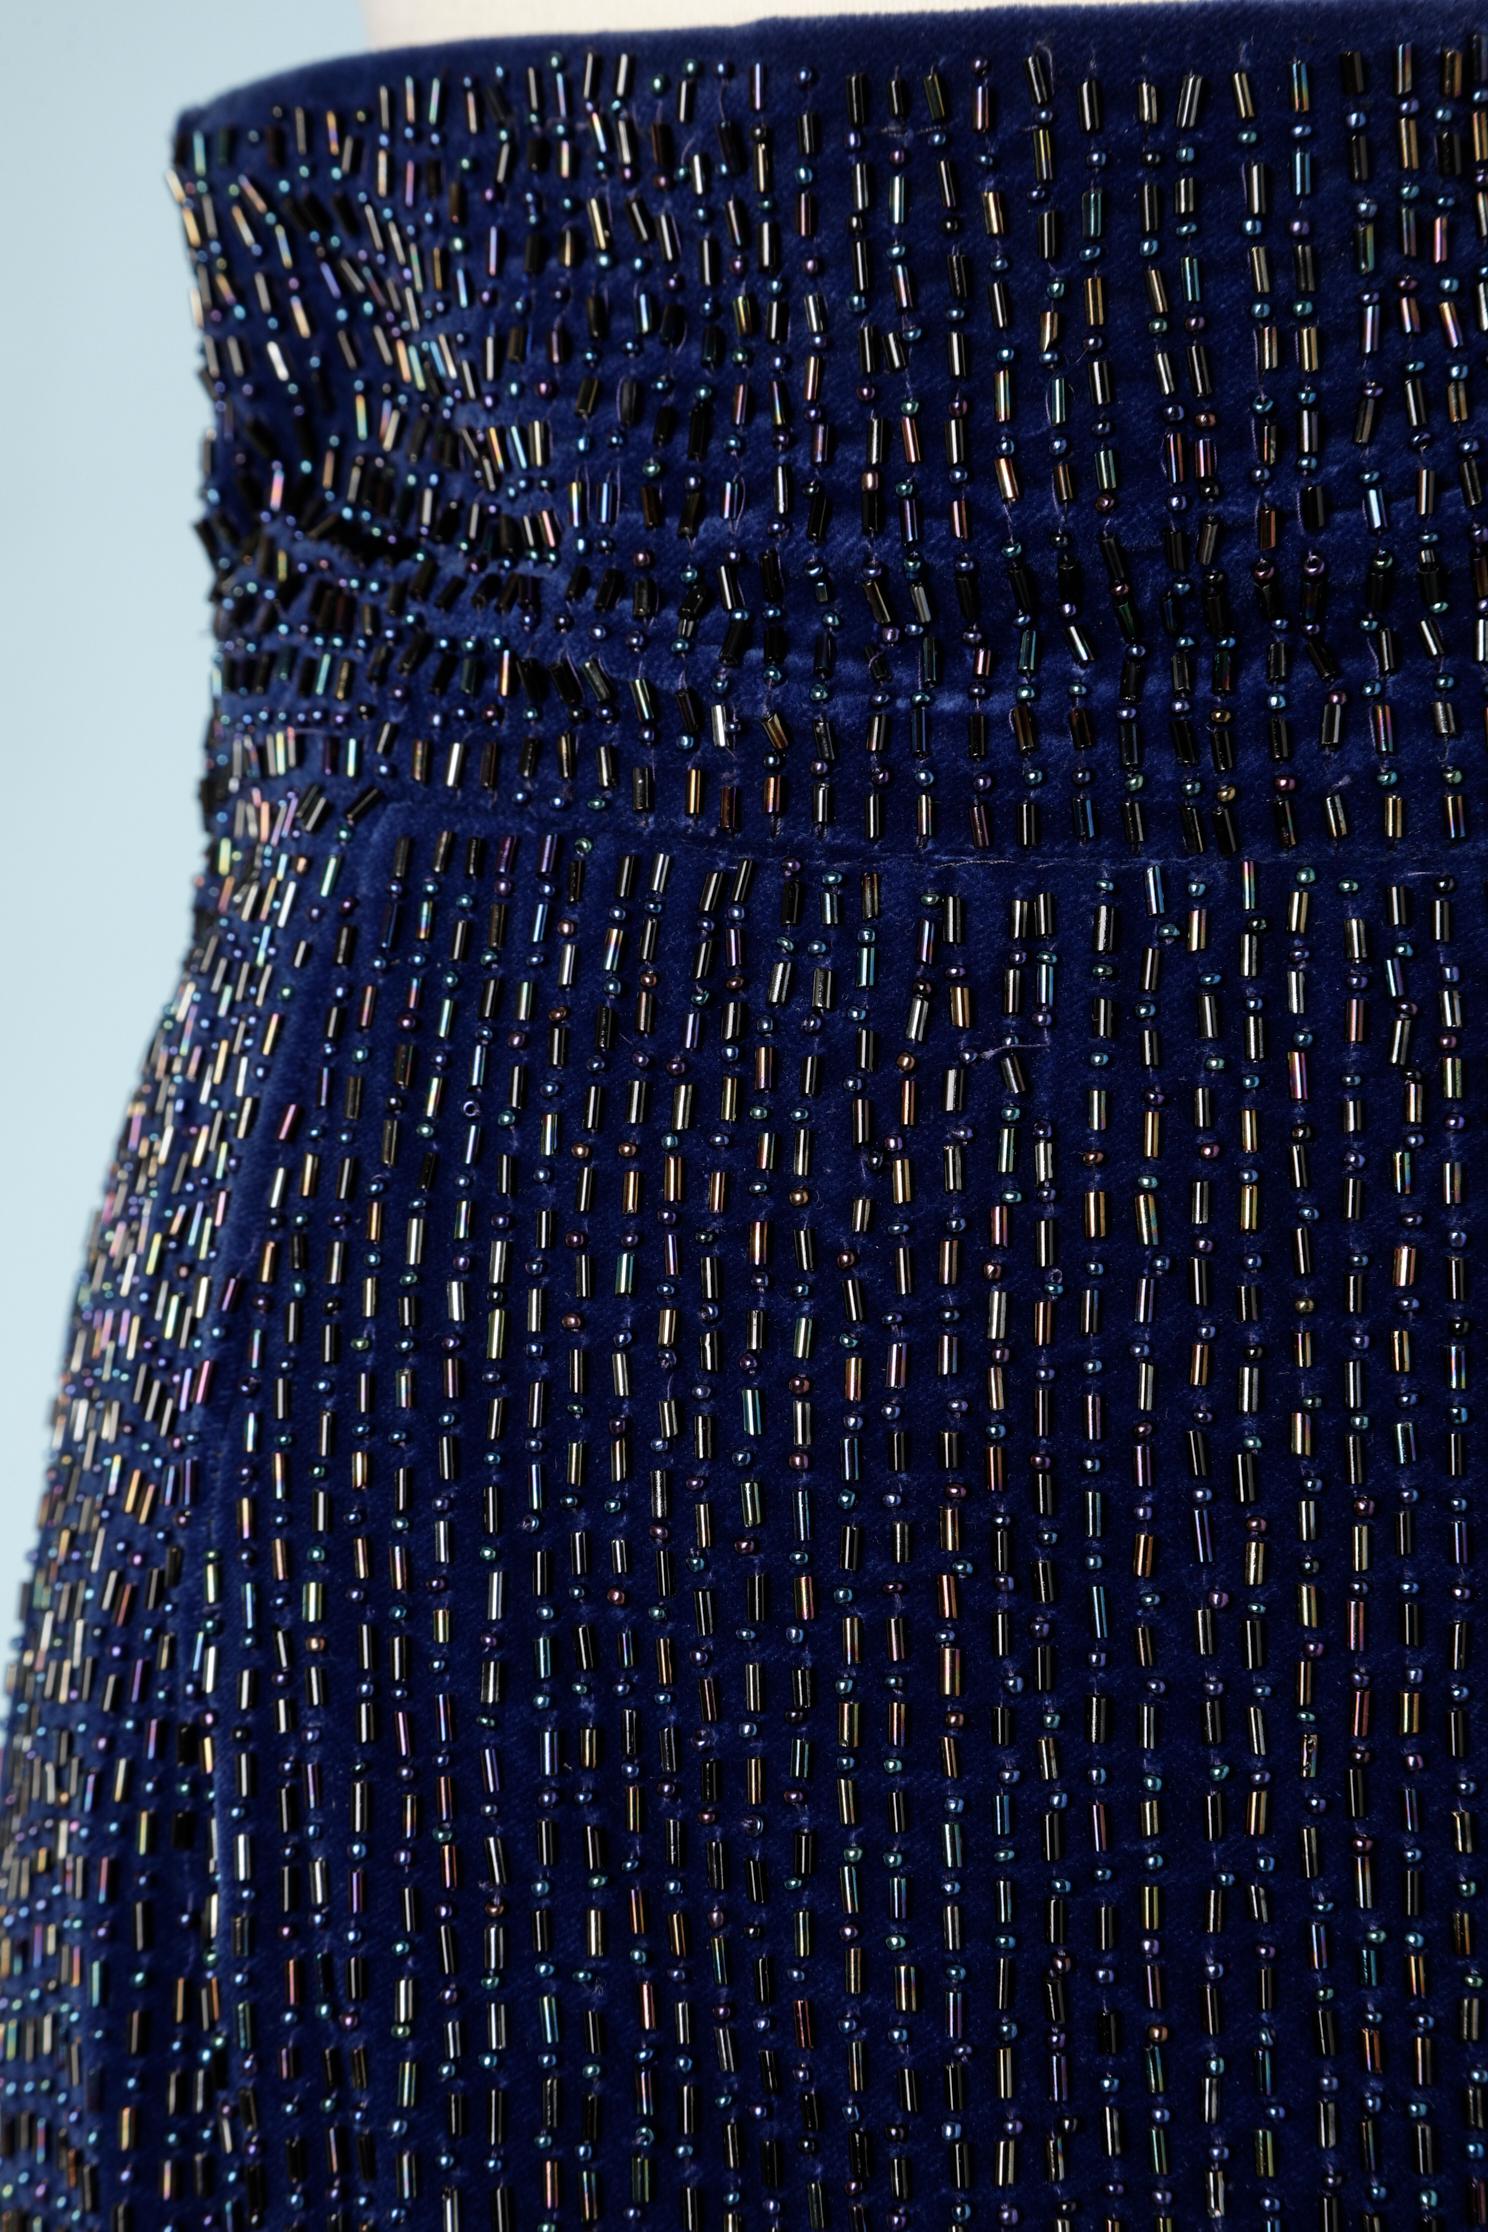 Night blue fully beaded pencil skirt on velvet base.
SIZE 42 (It) M